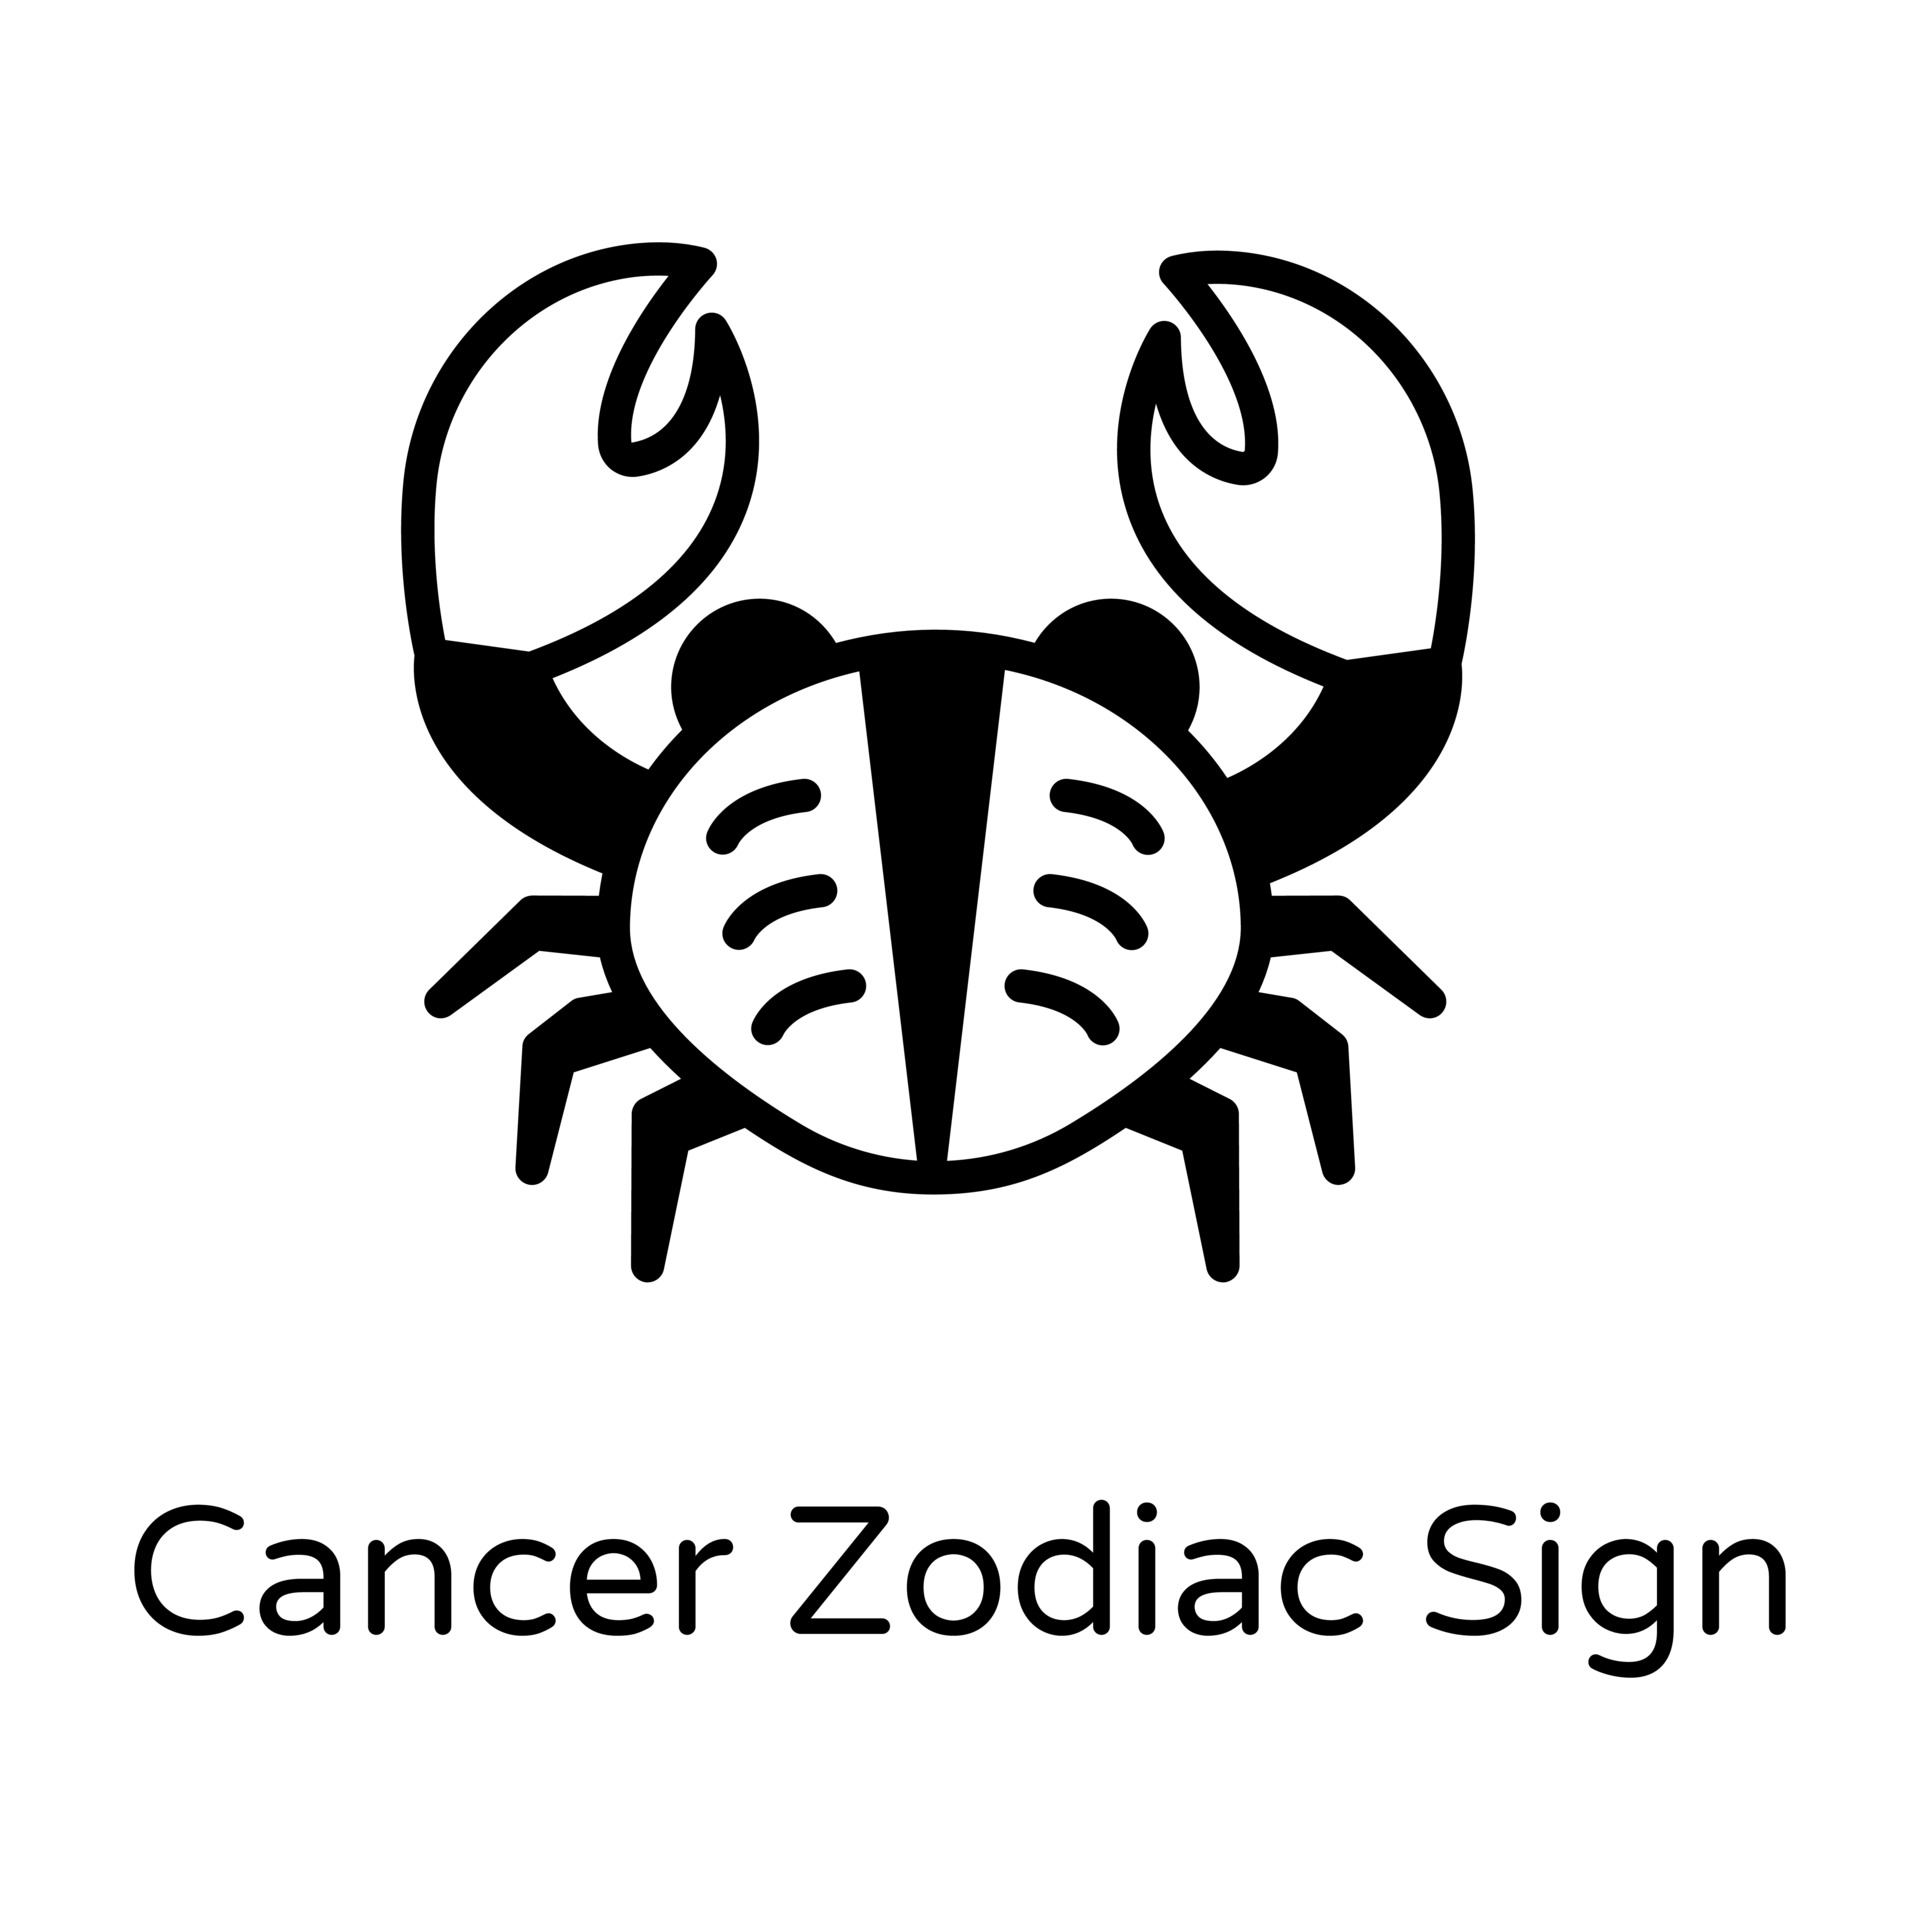 Cancer Zodiac Sign 3209700 Vector Art at Vecteezy